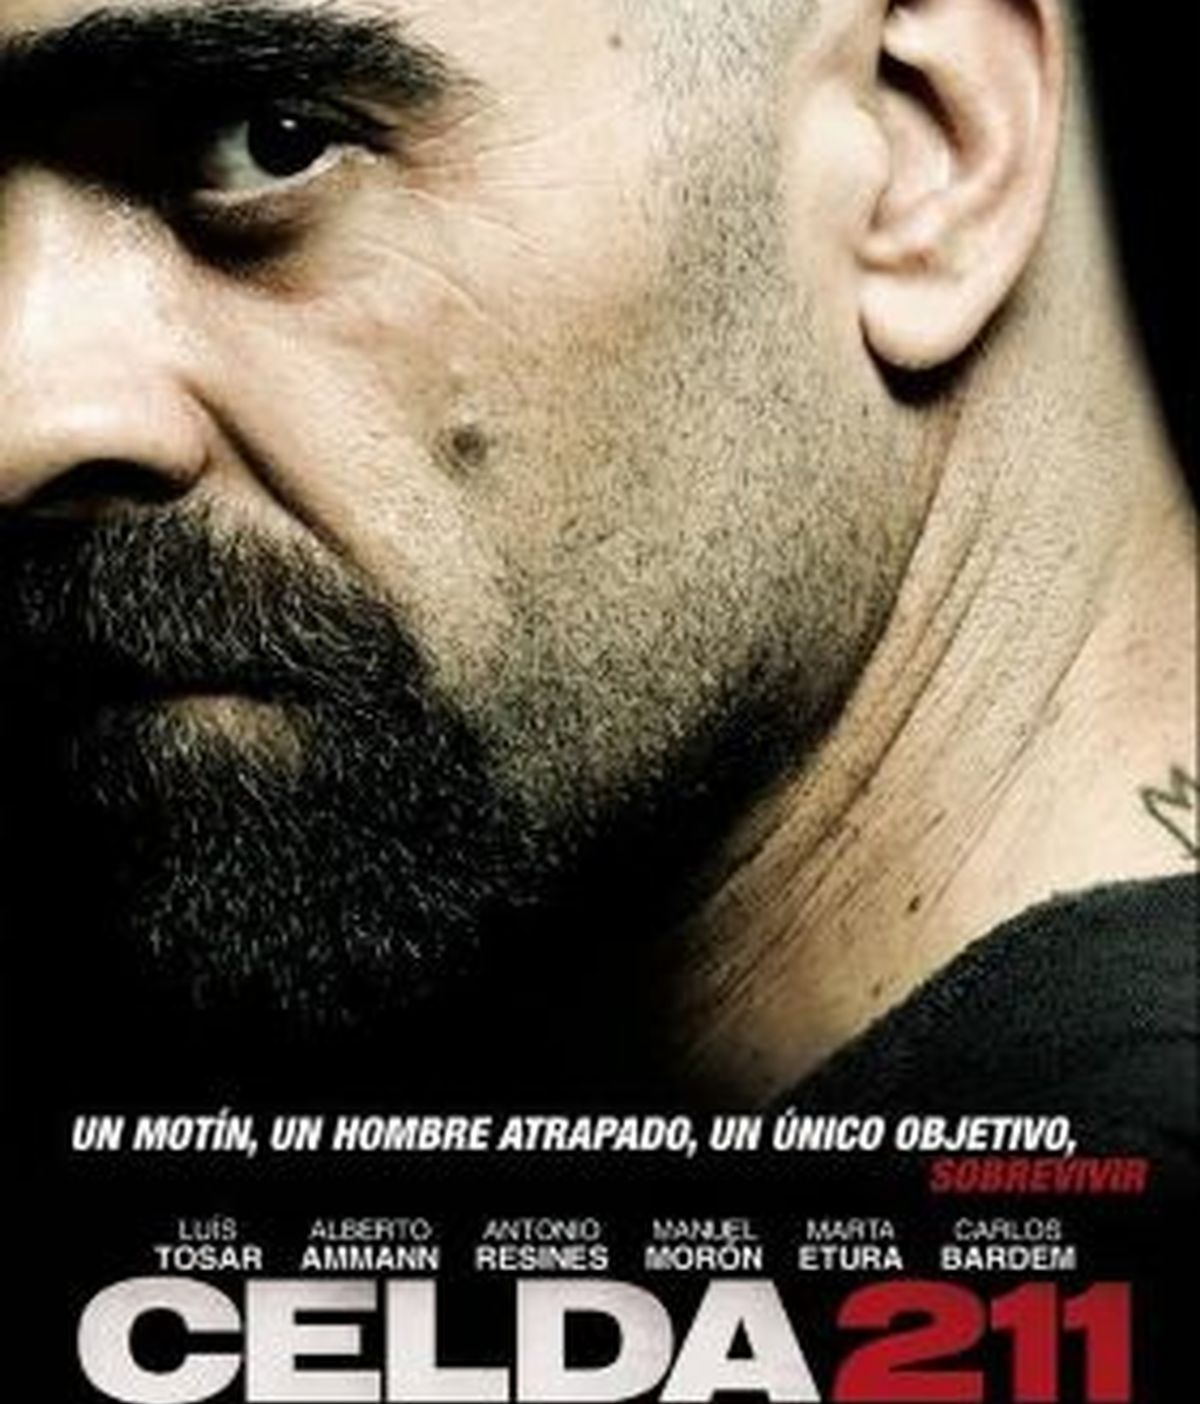 Celda 211, película coproducida en 2009 por Telecinco Cinema, que consiguió 8 premios Goya. Cartel oficial de la cinta